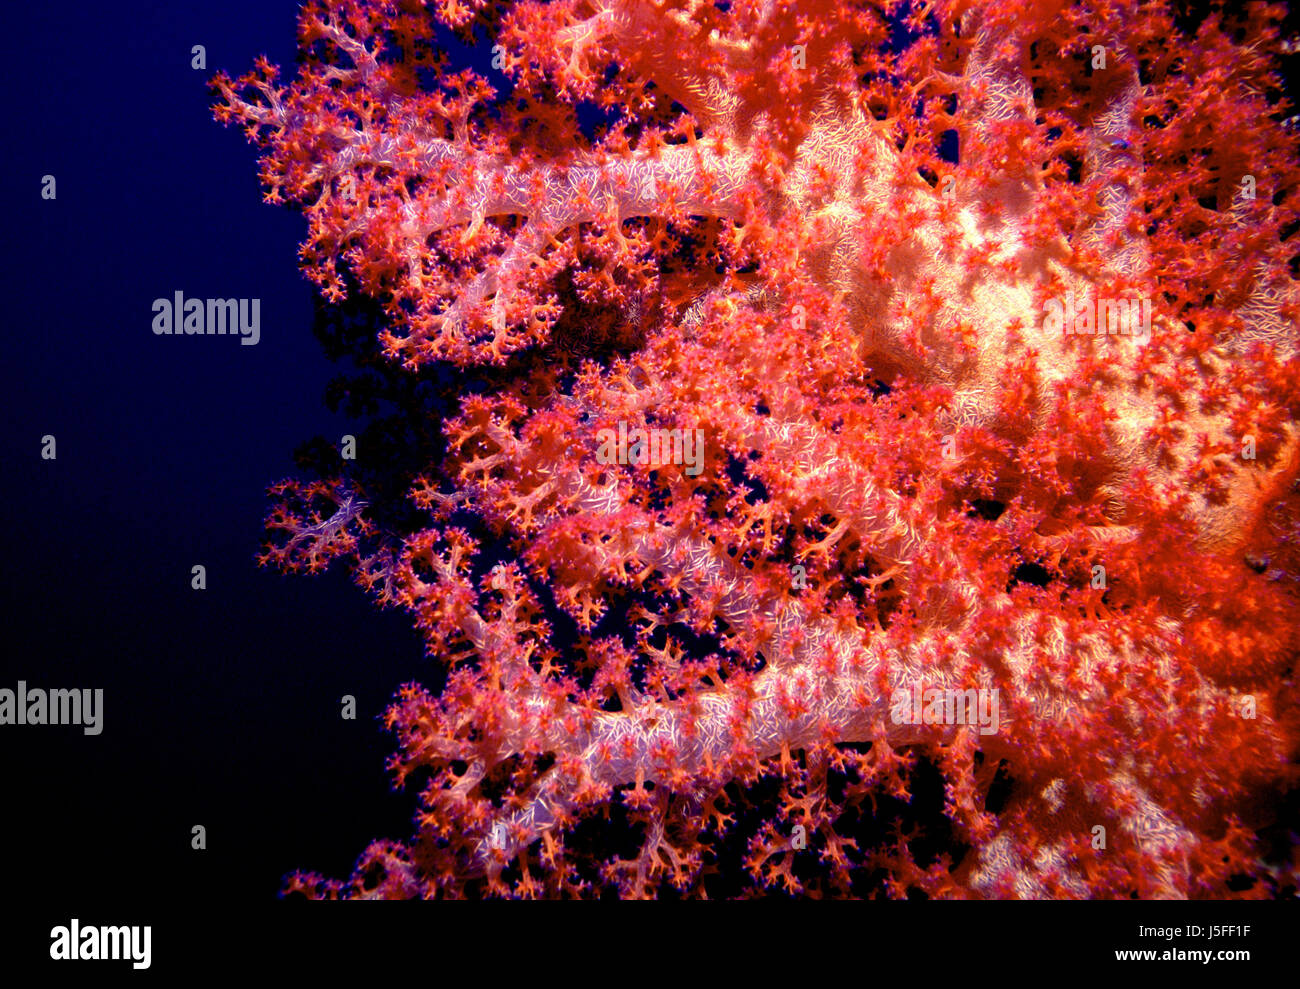 Pesce azzurro profondità profondità subacquea acqua di sale acqua dive saudita plancton profonda Foto Stock